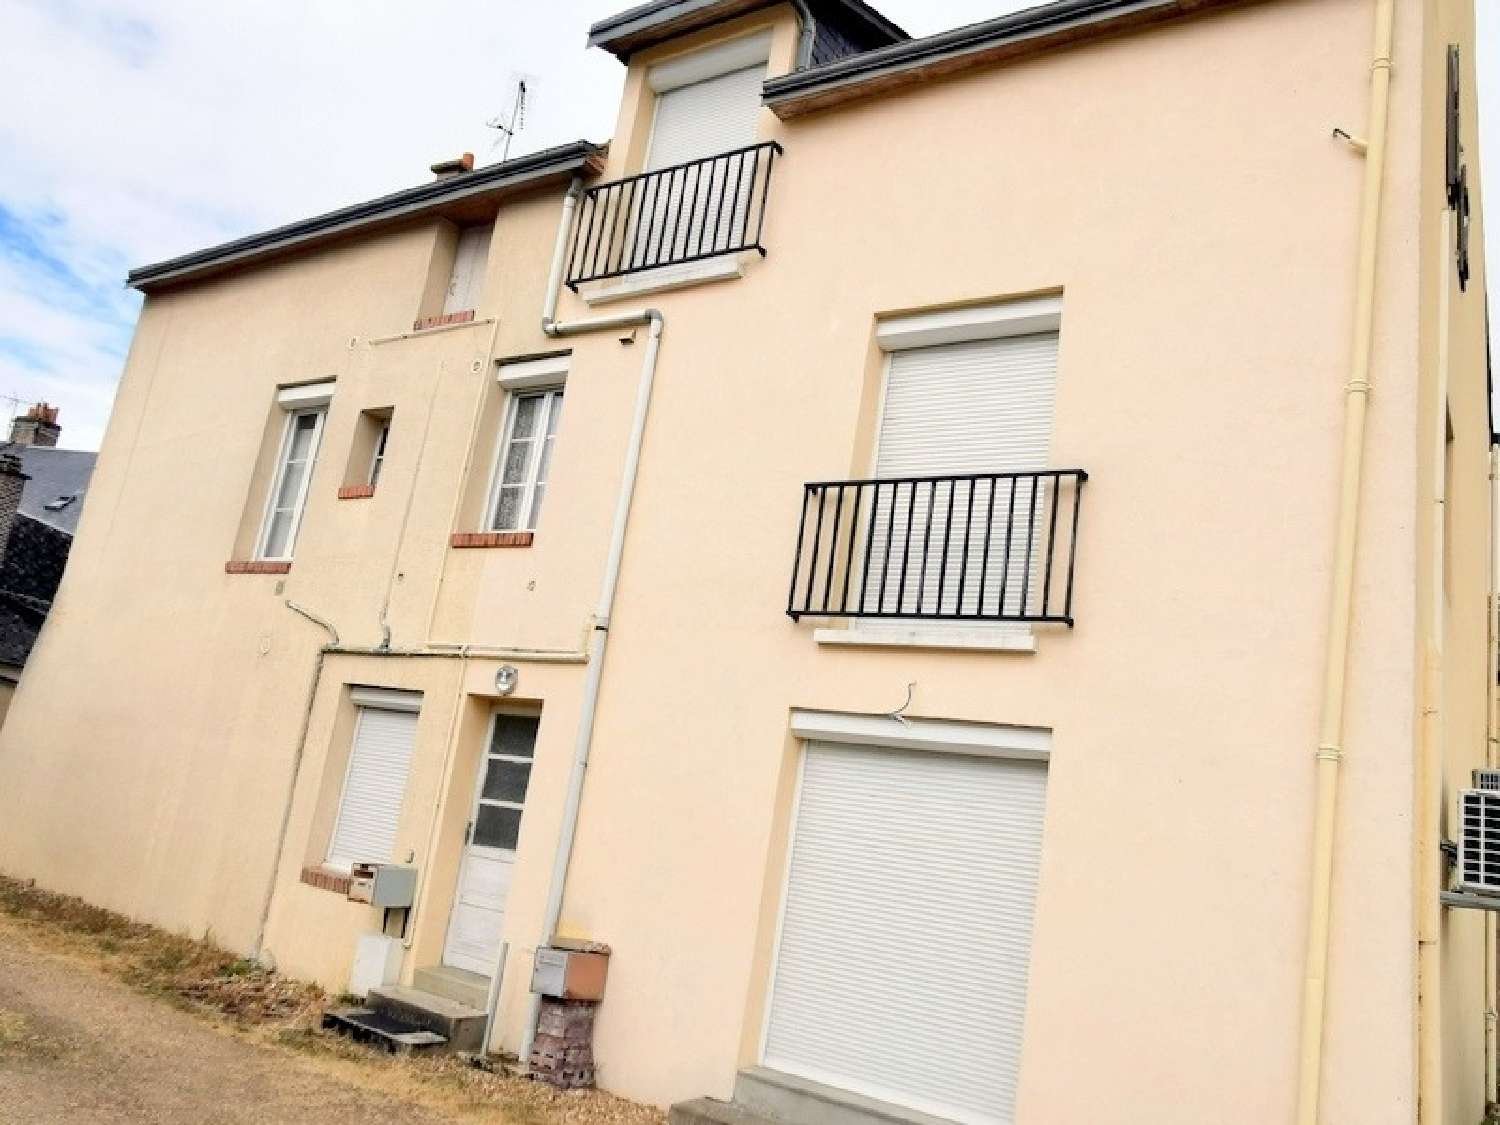  à vendre maison Bessé-sur-Braye Sarthe 4